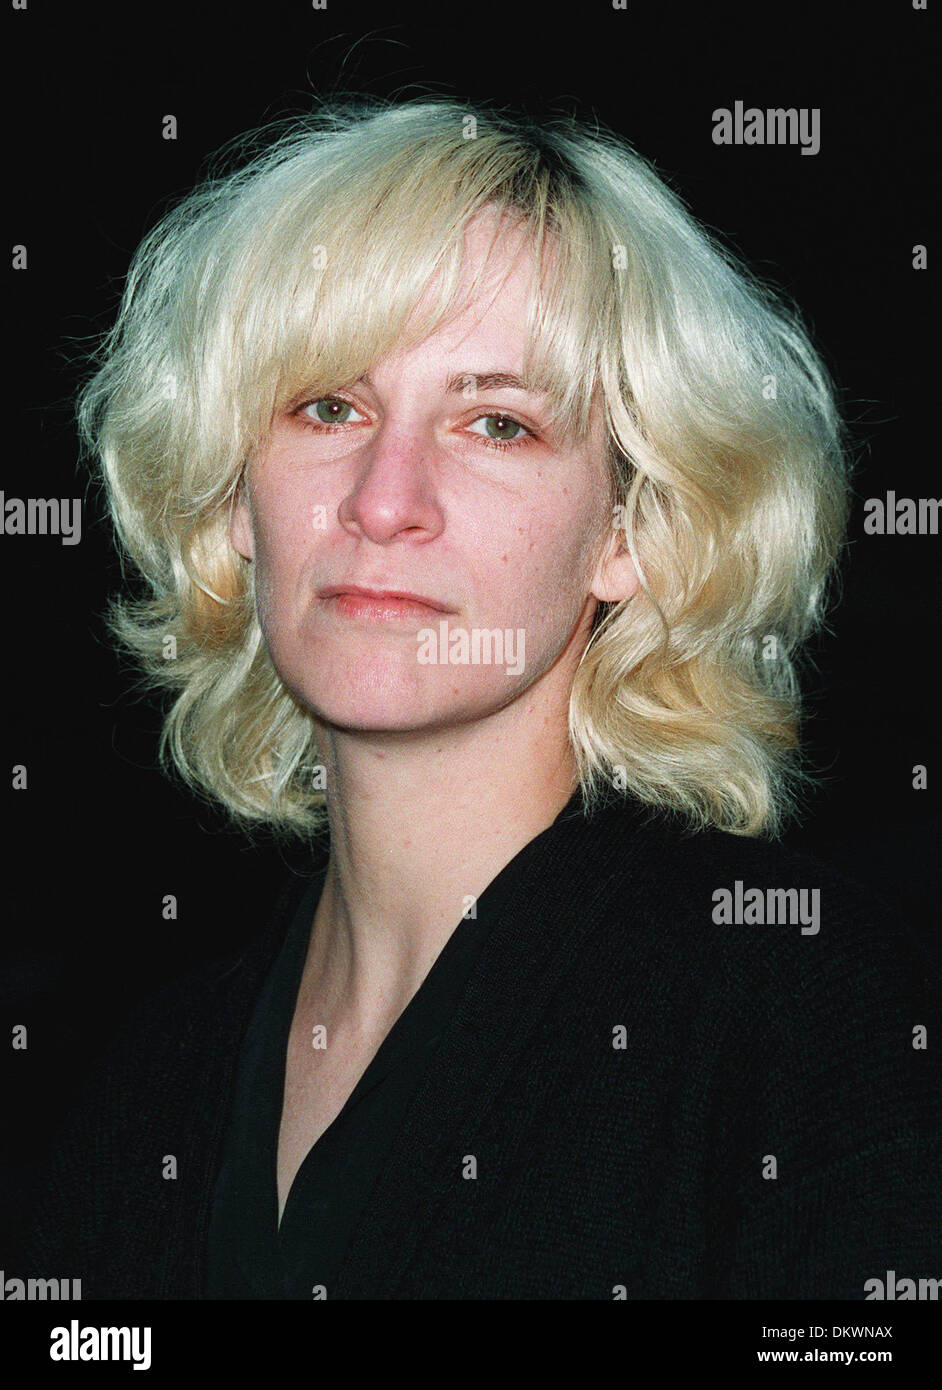 AMANDA PLUMMER.ACTRESS.05/06/1995.F50E5C. Stock Photo